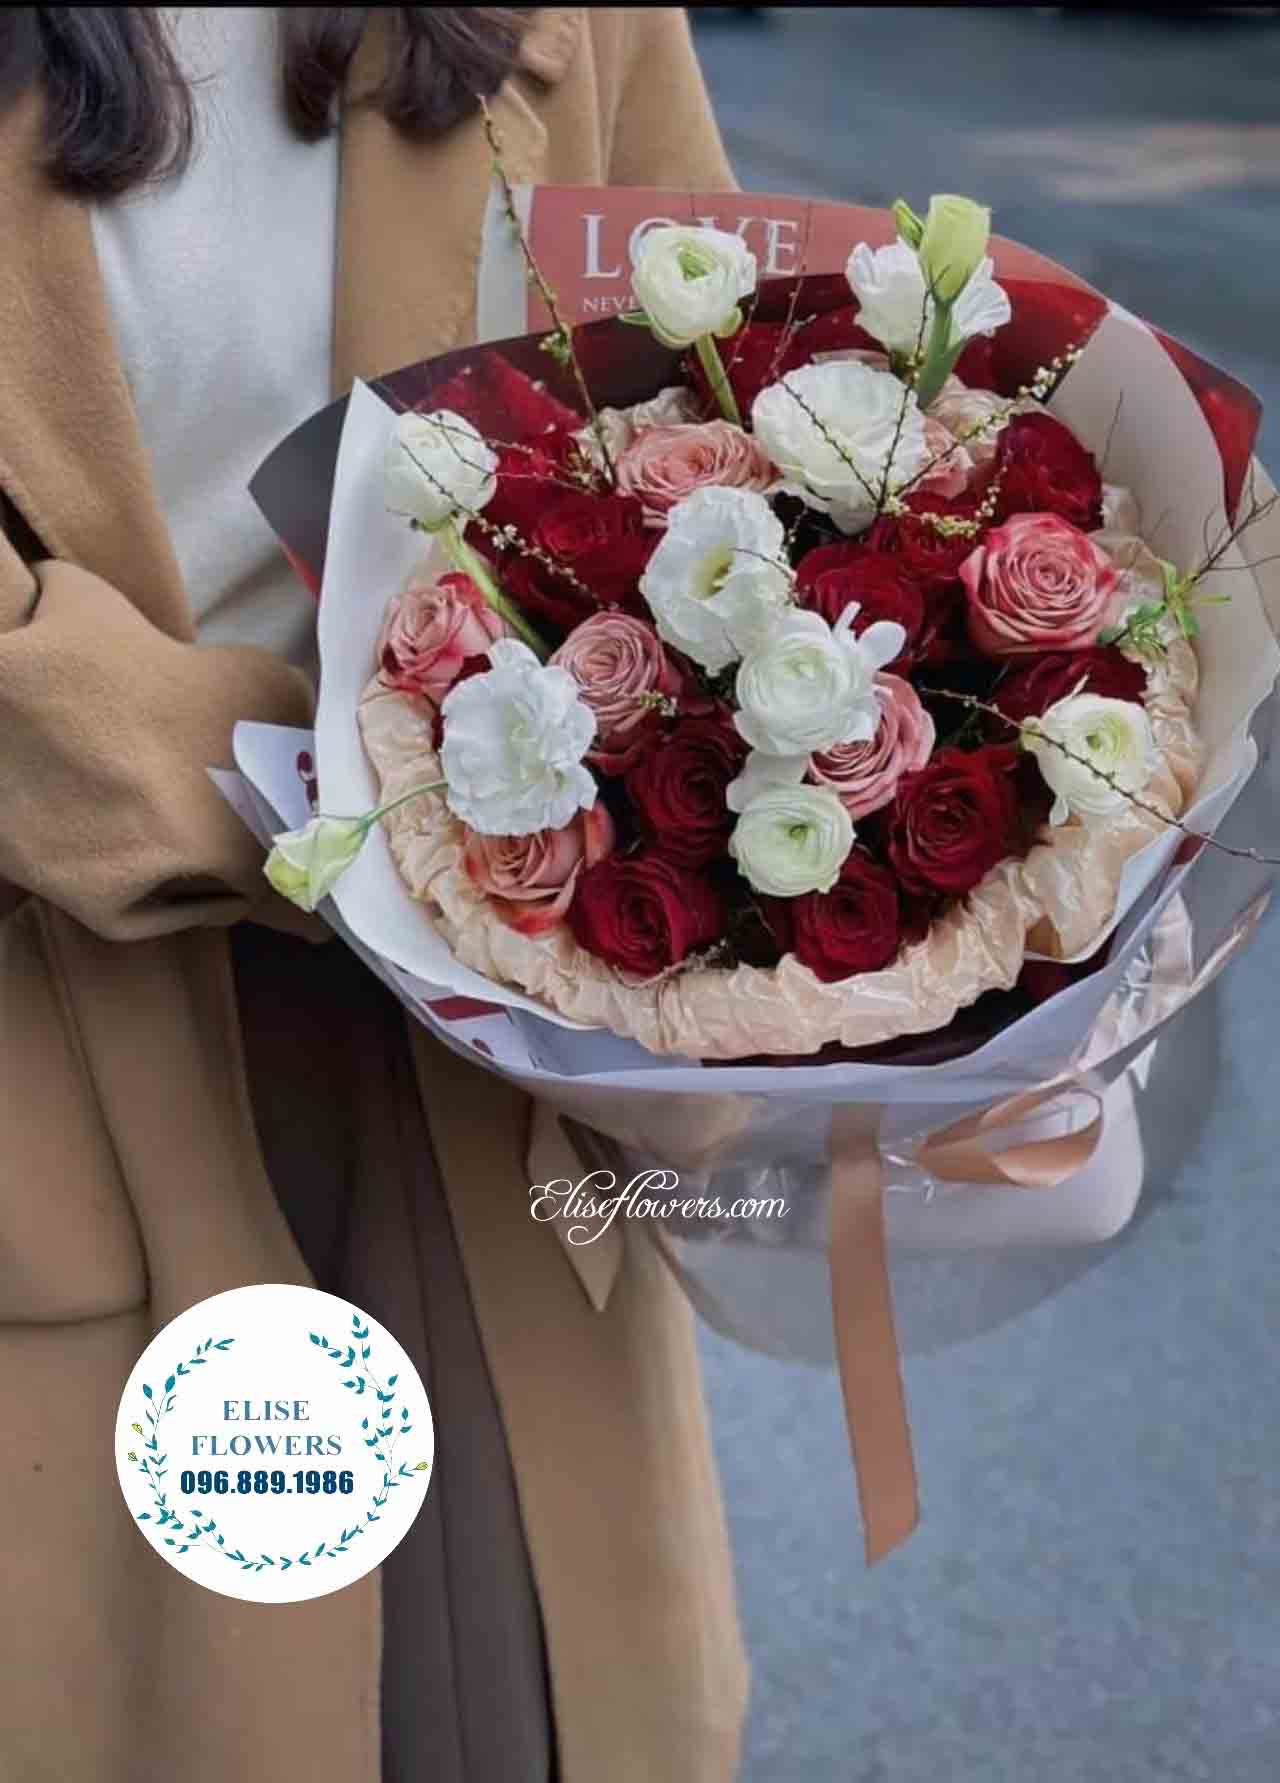 Hoa sinh nhật quận Đống Đa, Ba Đình, Hoàng Mai, Tây Hồ, Hai Bà Trưng, Hoàn Kiếm. Bó hoa sinh nhật đẹp ở Nội